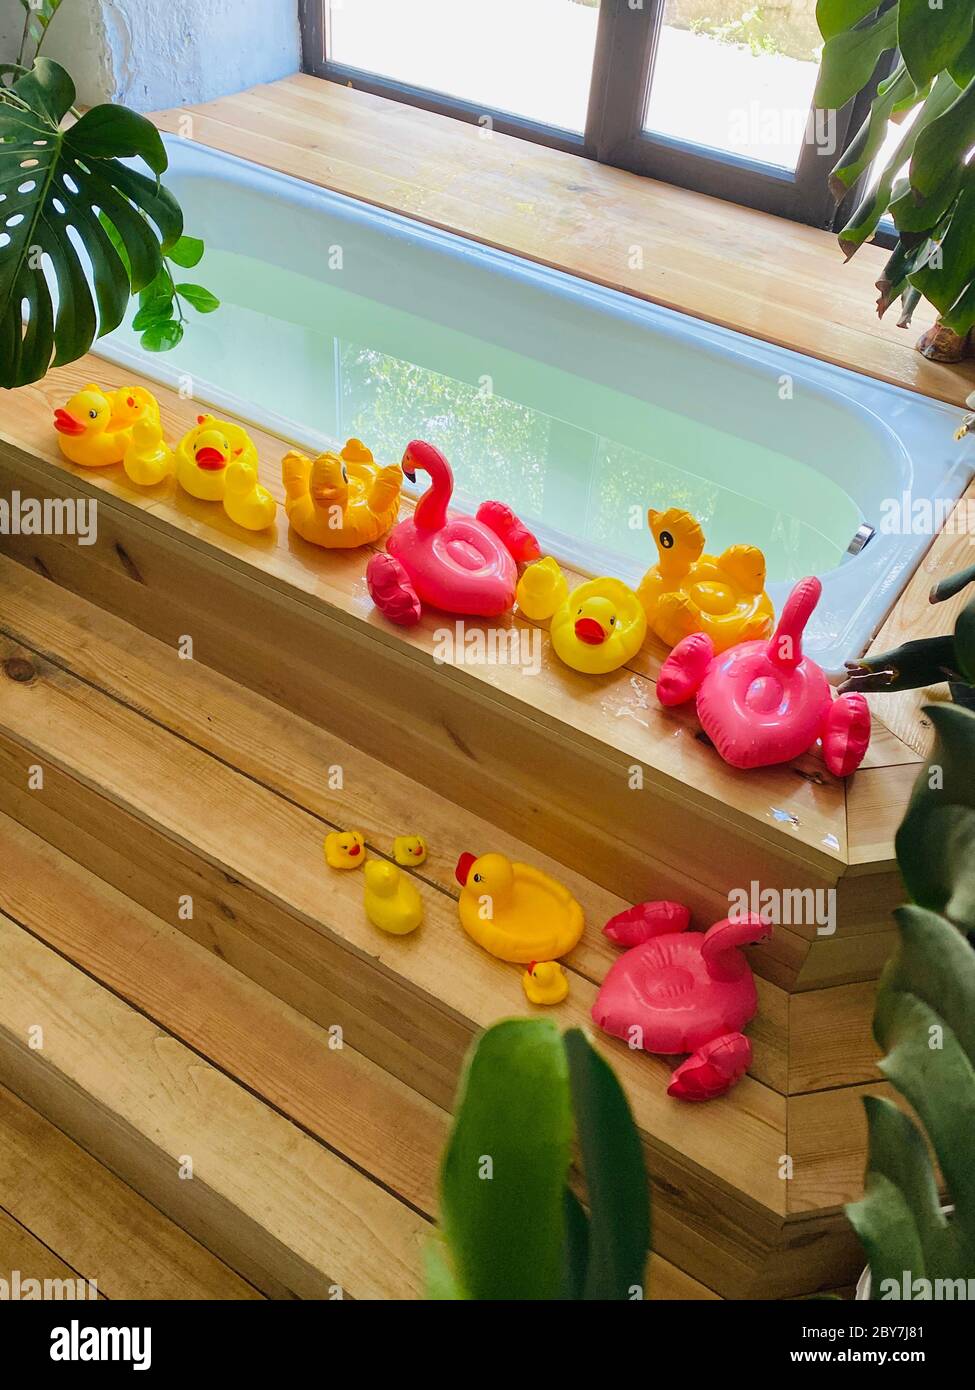 Los juguetes para niños en forma de patos y flamencos están al lado de bañera llena de agua para bañar a un niño en el fondo de las plantas de casa